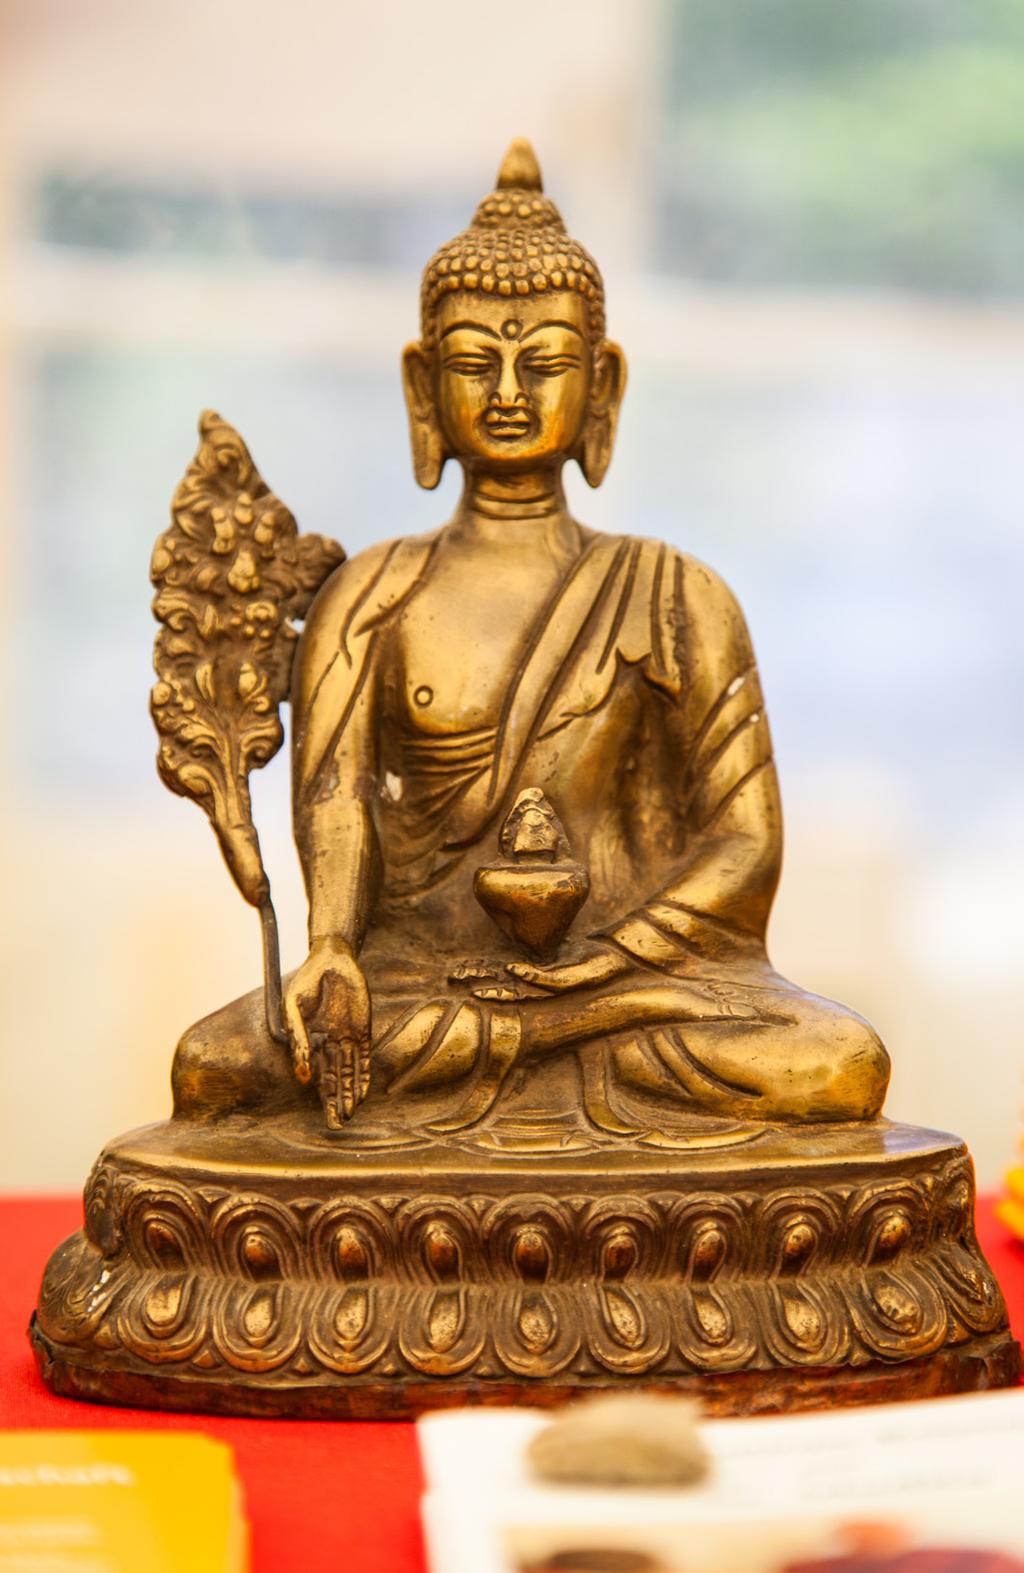 Der historische Buddha Buddha wurde zwischen 543 und 563 vor unserer Zeitrechnung in Lumbini (Nordindien) mit dem Namen Siddhattha Gotama (Pali) / Siddhartha Gautama (Sanskrit) geboren.